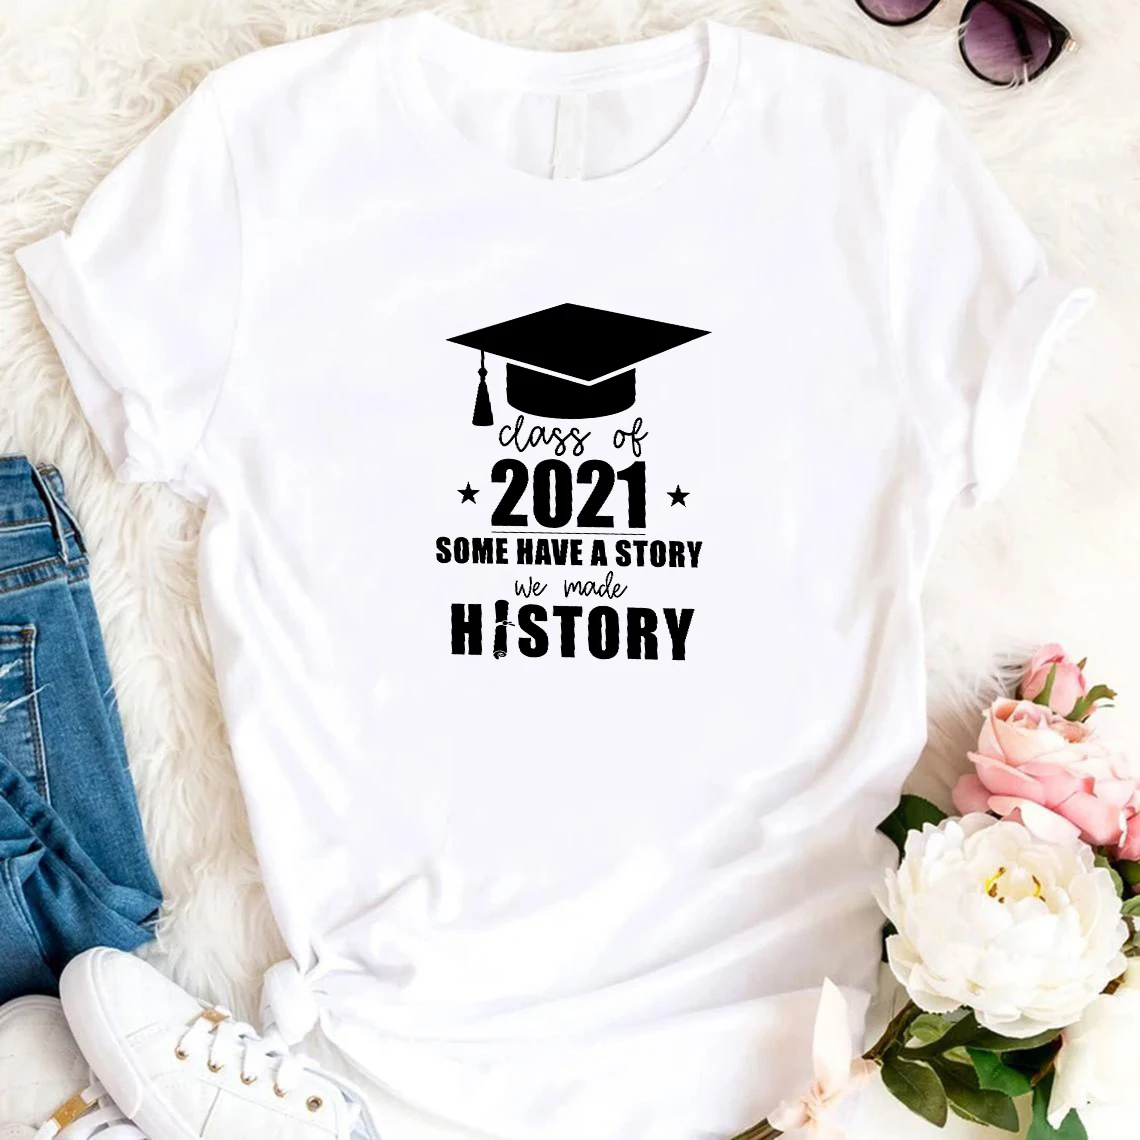 

Рубашки класса 2021 у некоторых есть история, которую мы сделали, футболка с историей, футболка для пожилых людей, рубашка на выпускной, для пожилых класс 2021